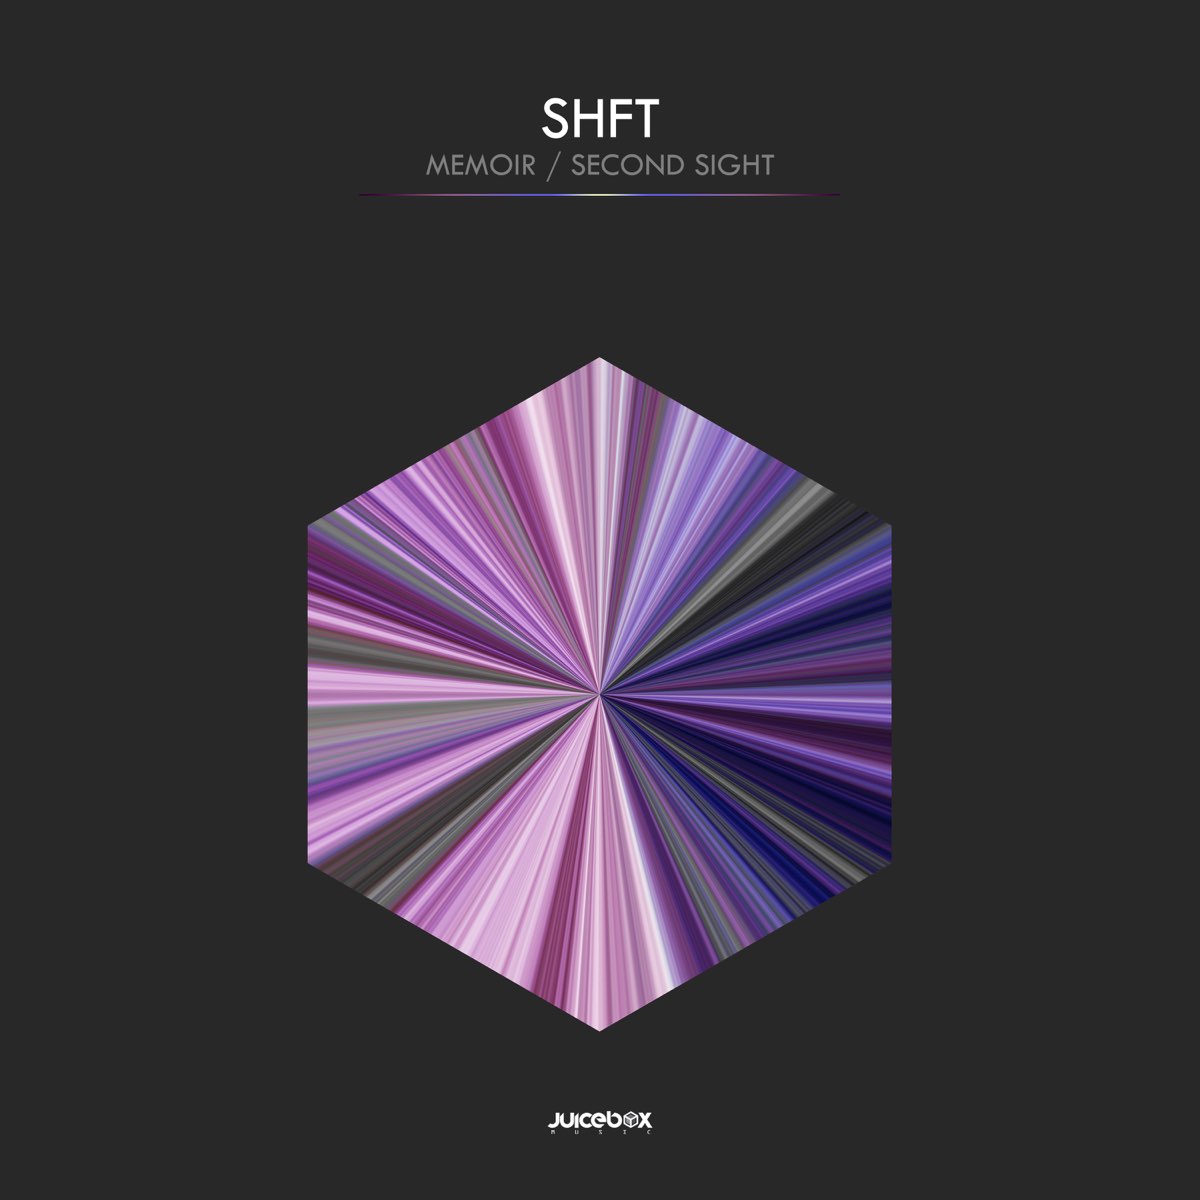 Seconds mixed. SHFT. Origins : a Memoir. Depart - the Sight (Original Mix). Memoir #02 Speed up.